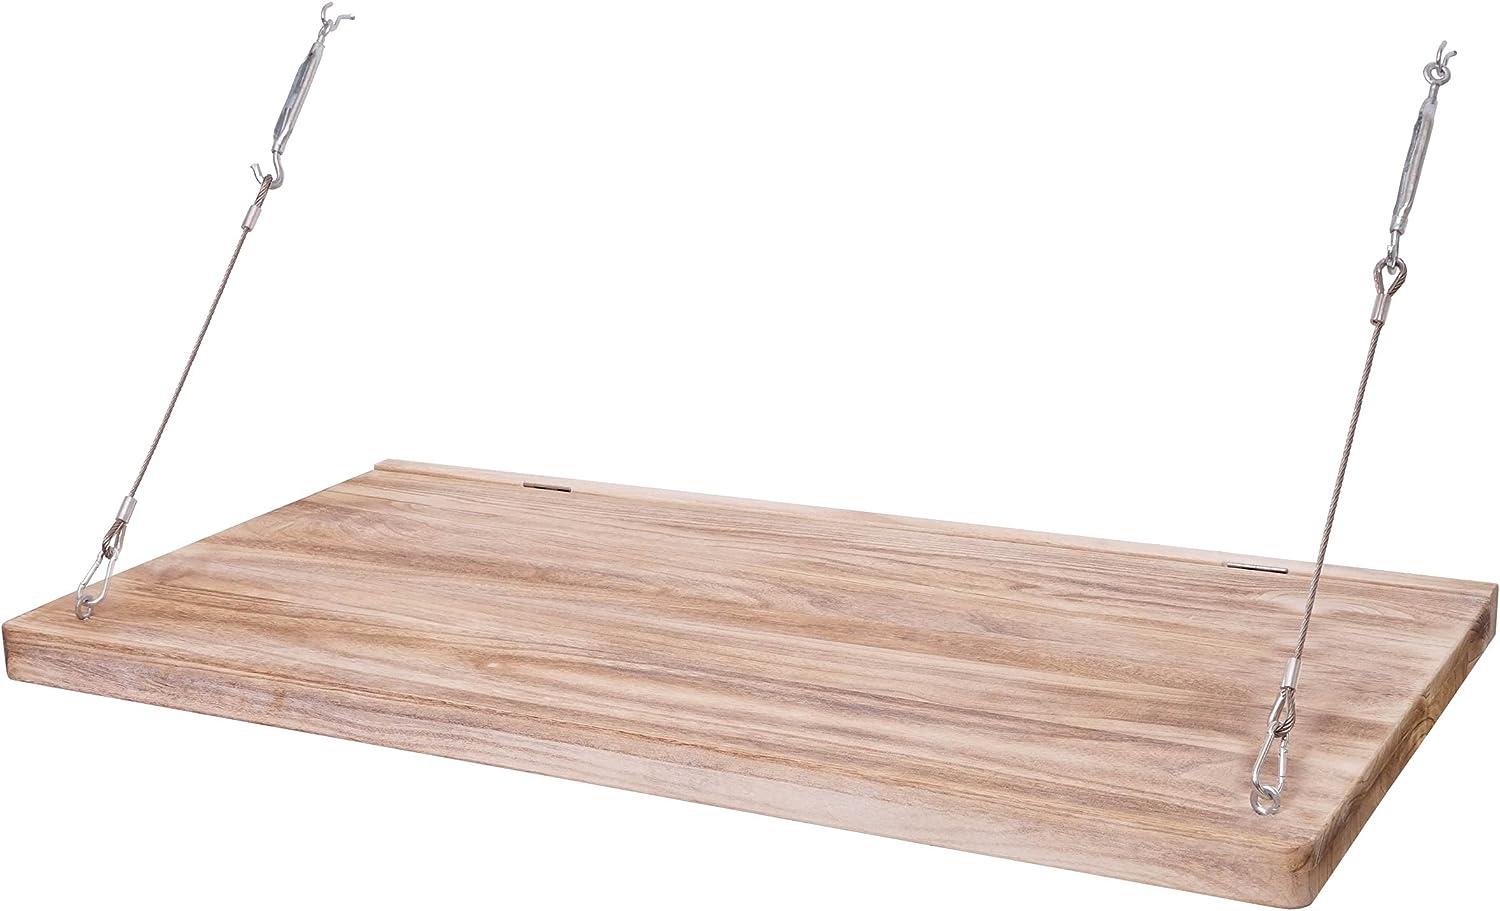 Wandtisch HWC-H48, Wandklapptisch Wandregal Tisch mit Tafel, klappbar Massiv-Holz ~ 100x50cm Bild 1